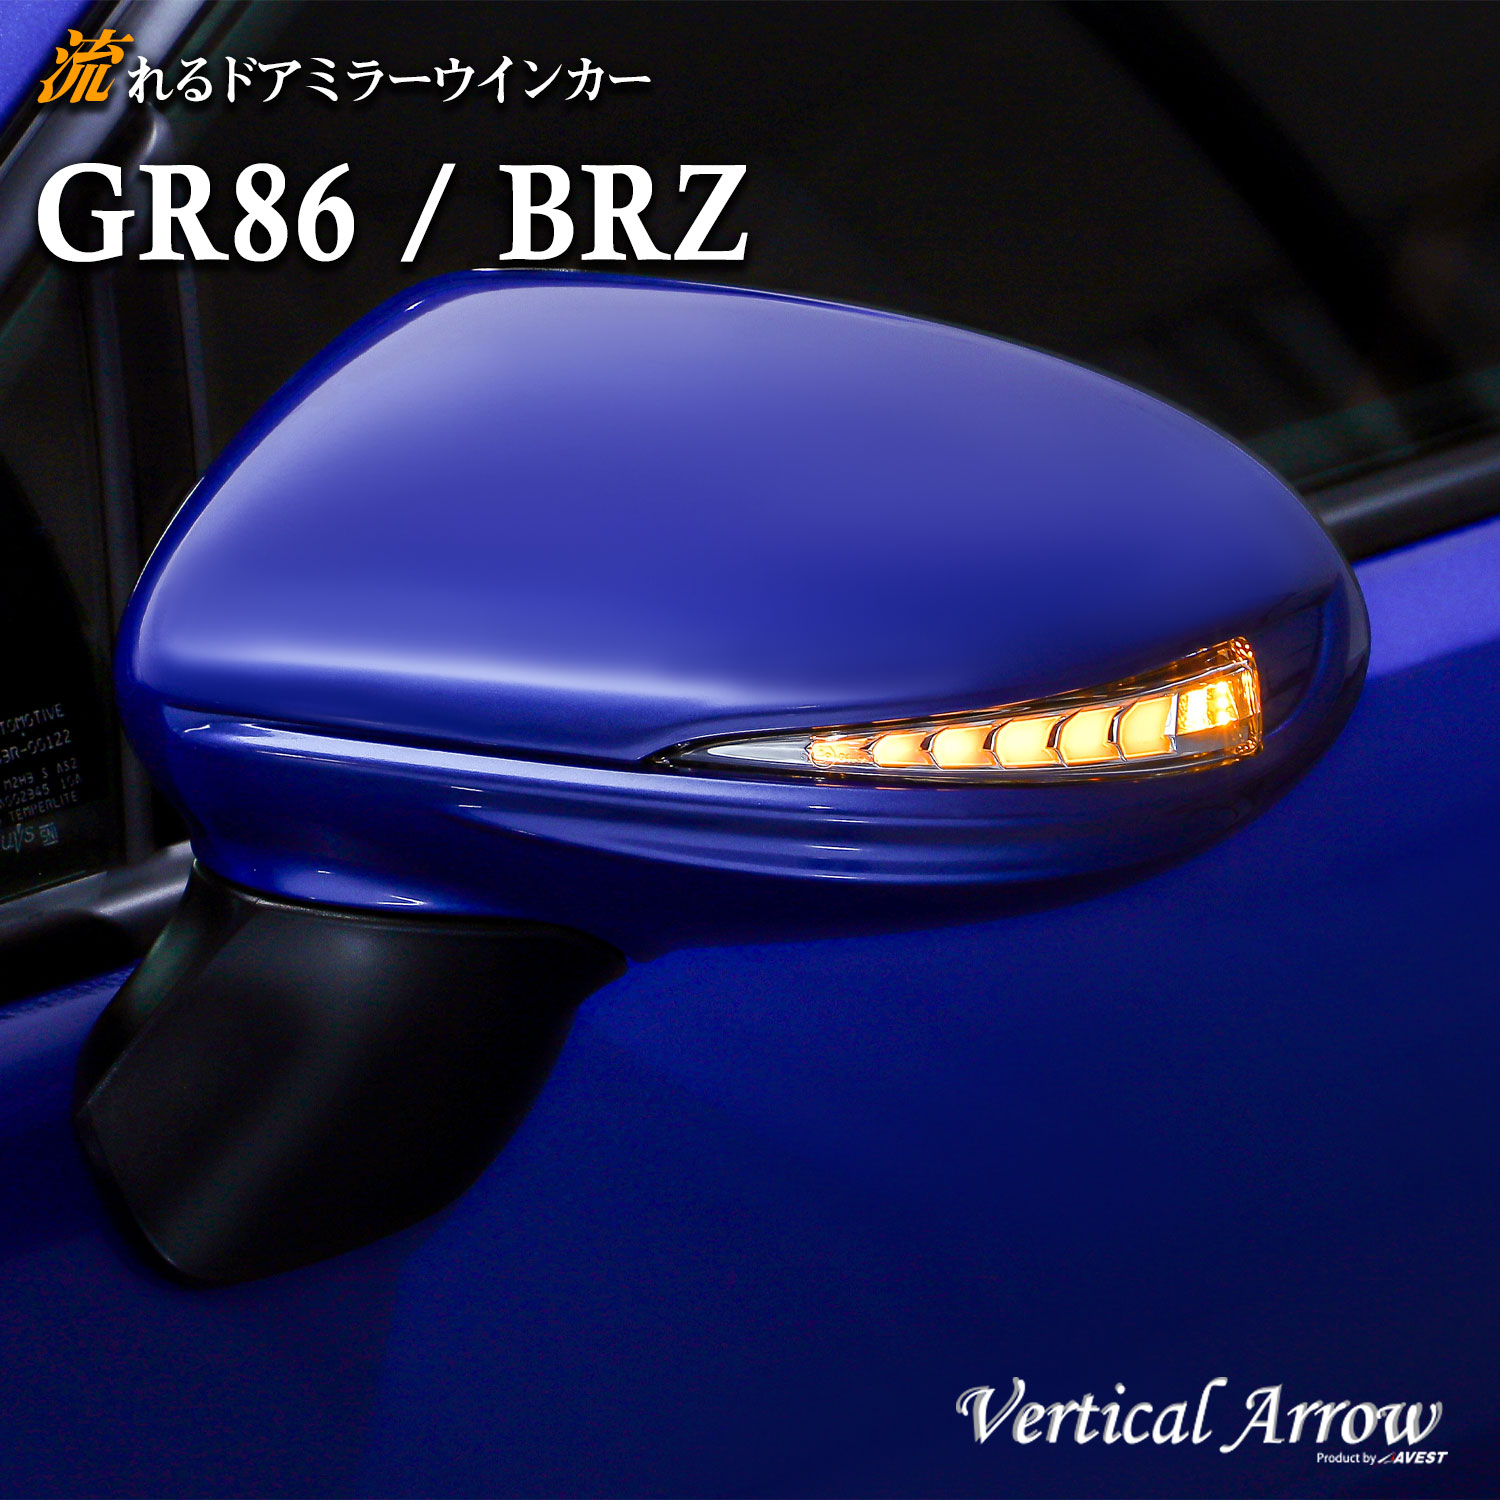 GR86 BRZ 流れるウインカーレンズ シーケンシャルドアミラーレンズ インナークローム ホワイト ブルー TOYOTA トヨタ SUBARU スバル AVEST VerticalArrow TypeZs 新型BRZ カスタム 外装パーツ